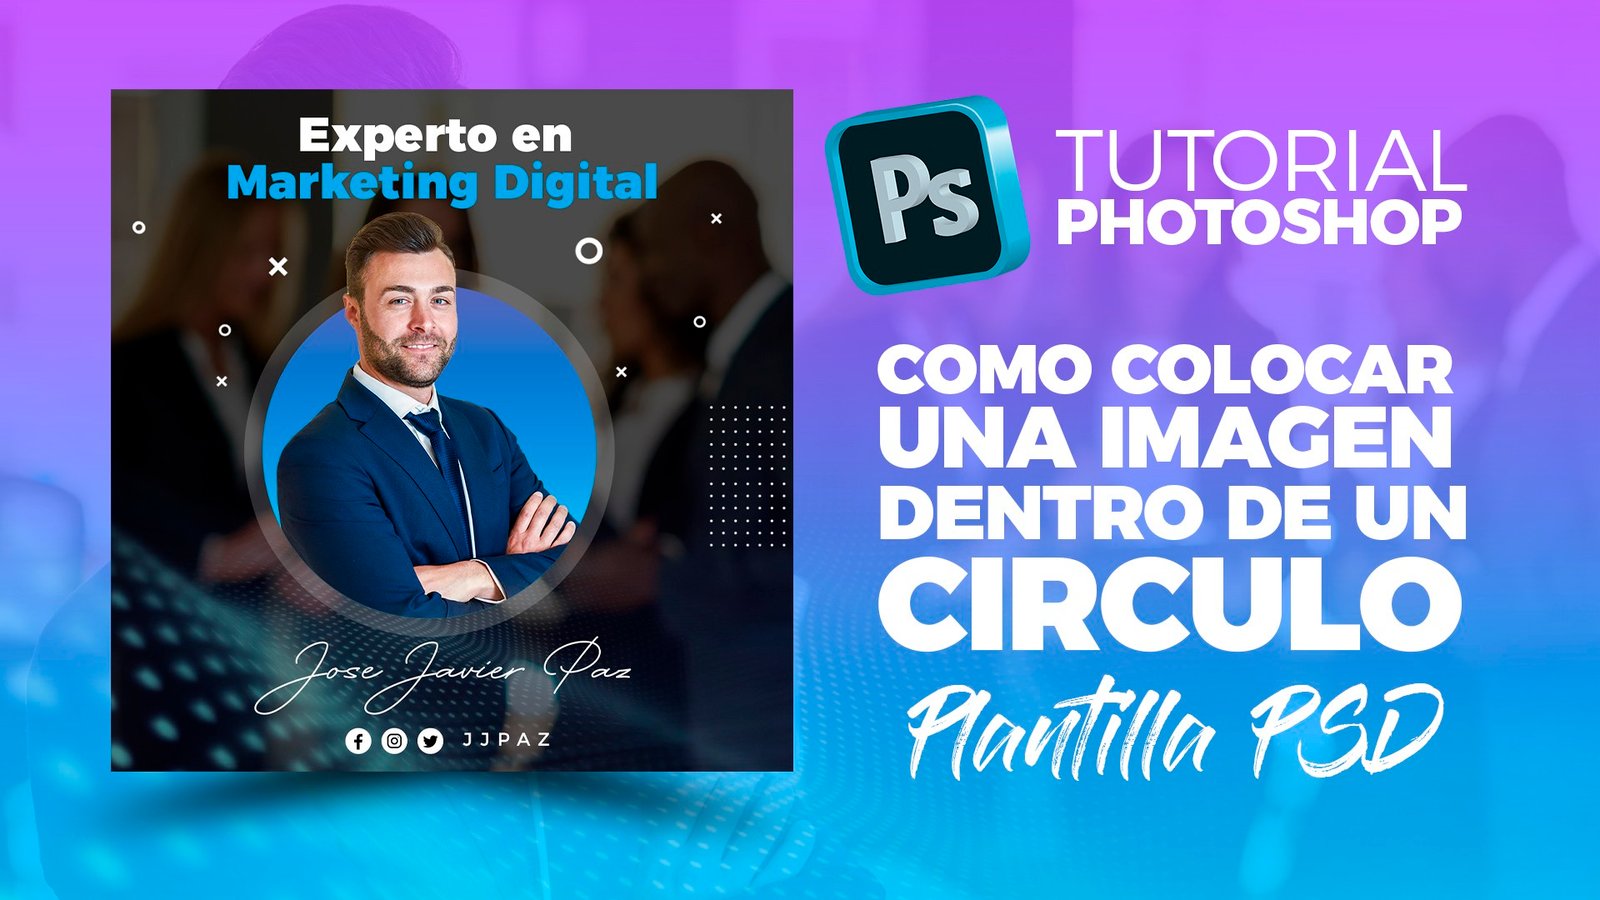 Tutorial cómo colocar una imagen dentro de un círculo en Photoshop + Plantilla PSD -